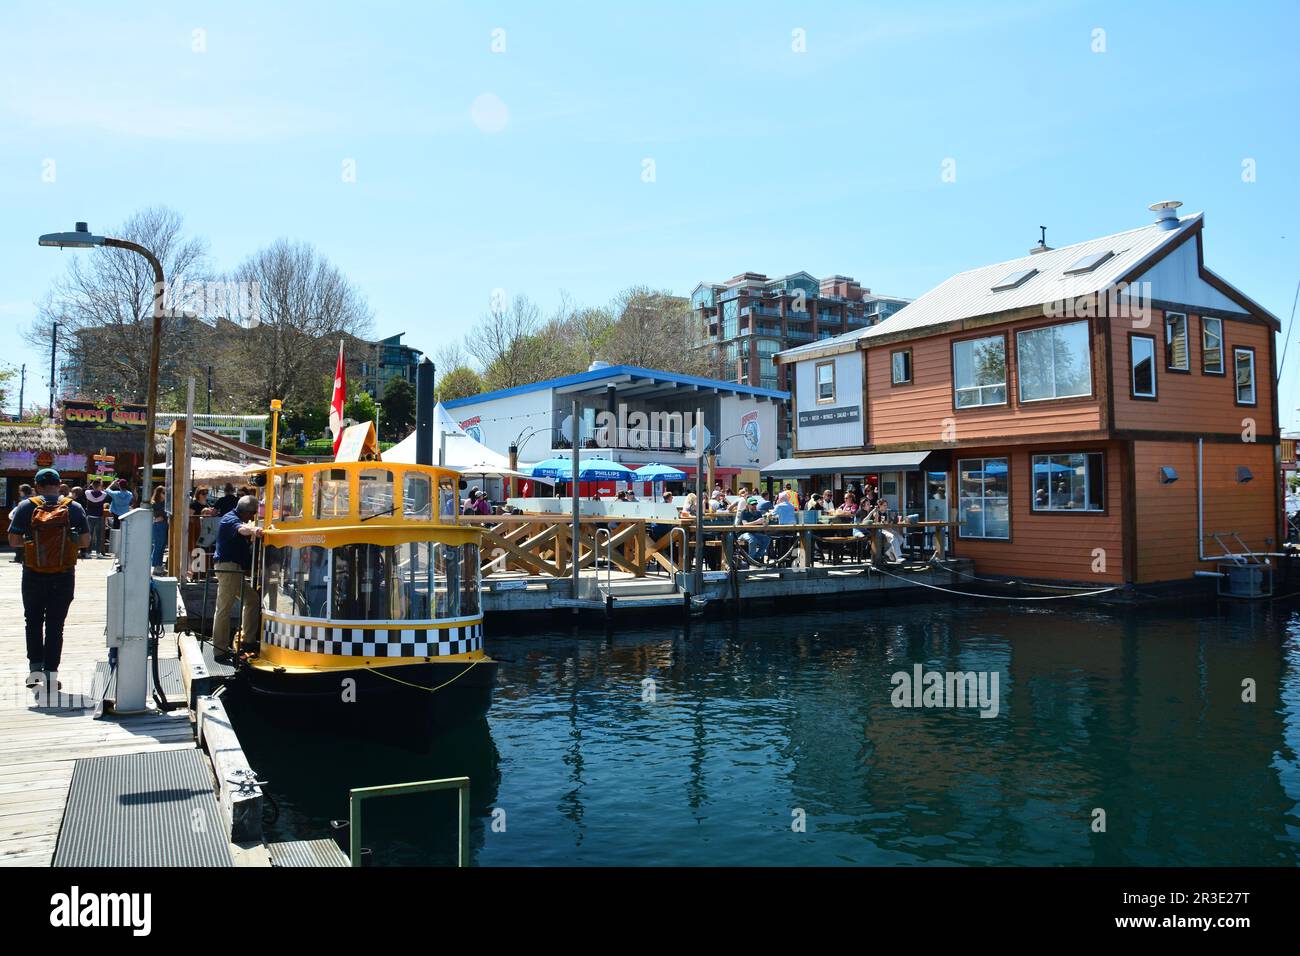 Die Sehenswürdigkeiten und Geschäfte von Fisherman's Wharf in Victoria BC, Kanada. Kommen Sie nach Victoria und erkunden Sie den Wharf. Stockfoto